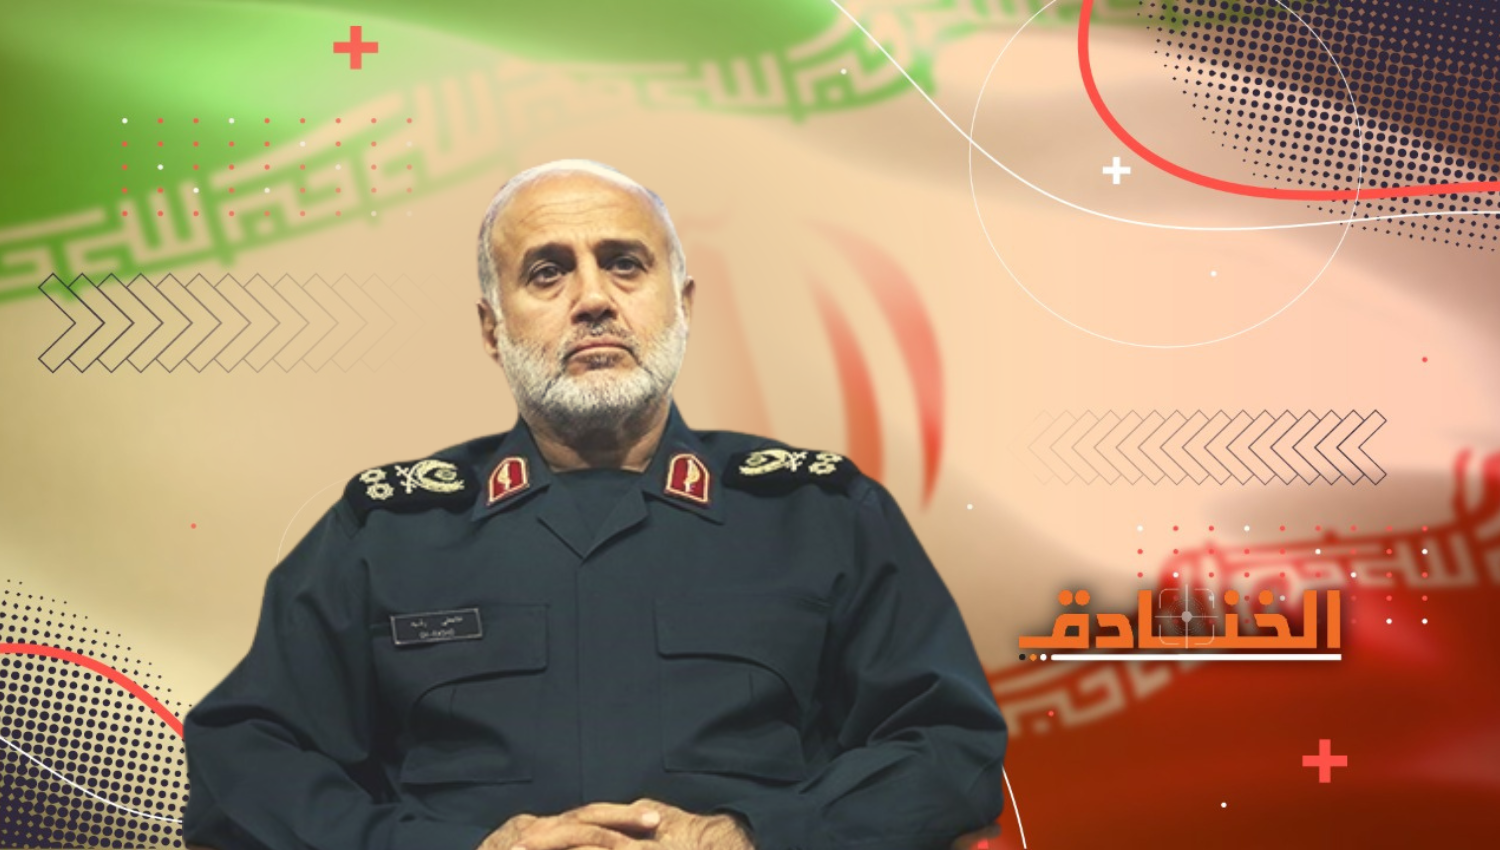 اللواء غلام علي رشيد: قائد مقر خاتم الأنبياء المركزي